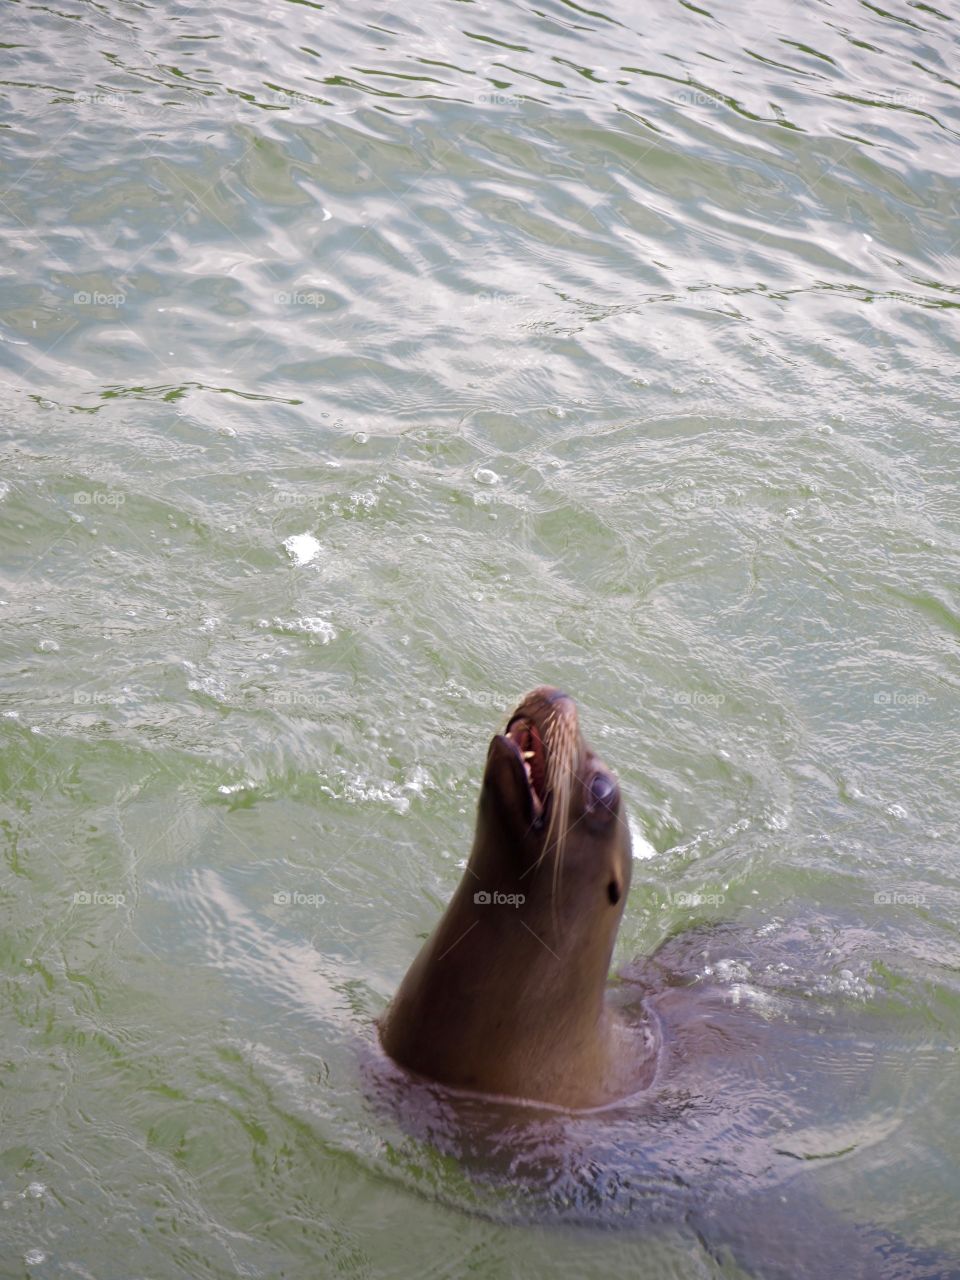 Sea lion begging for food alongside a boat